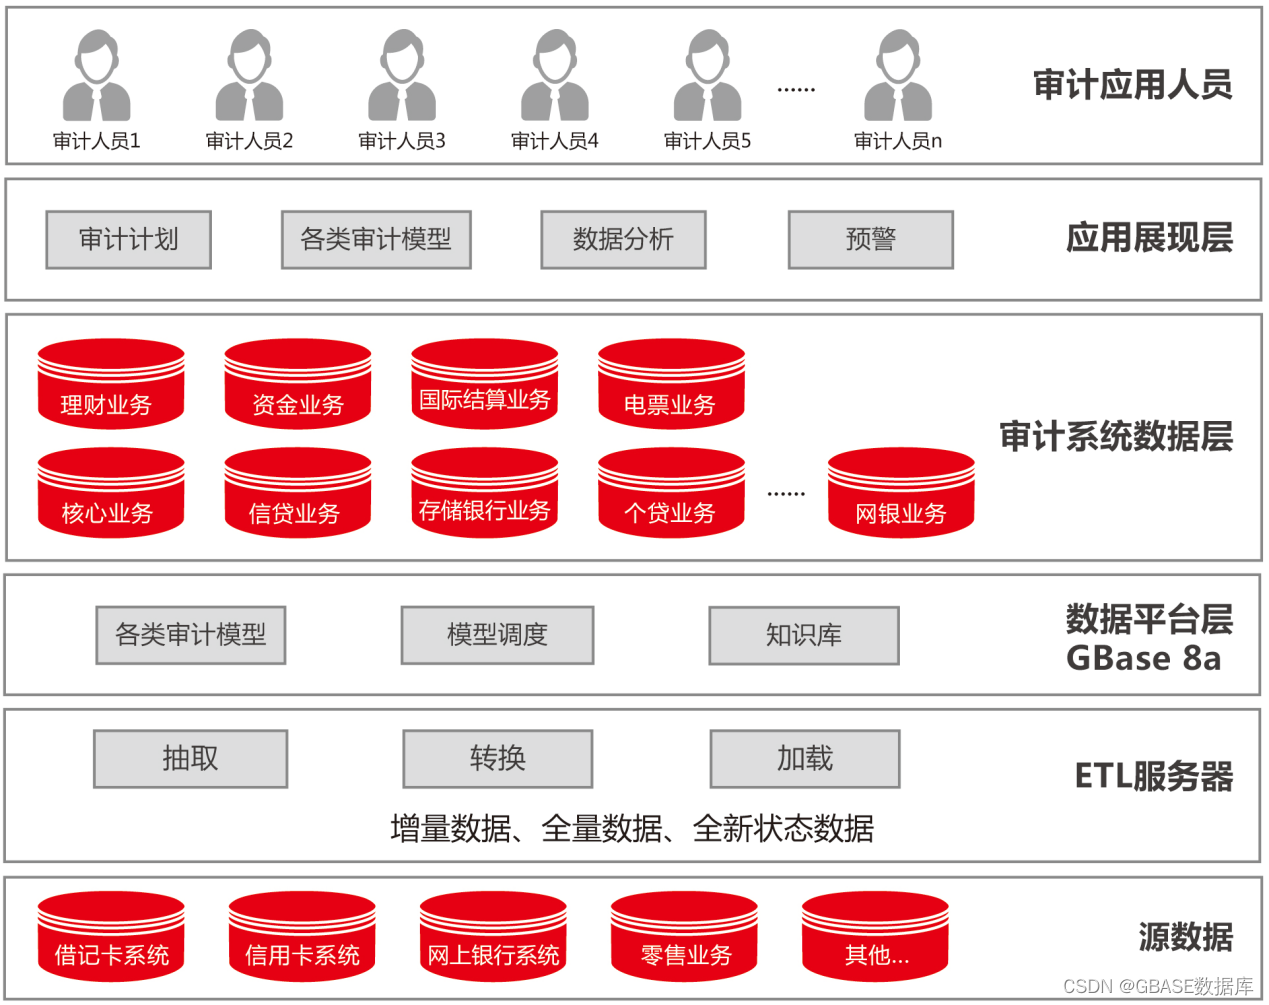 GBASE南大通用数据库案例分享-江苏银行审计系统改造项目_GBASE